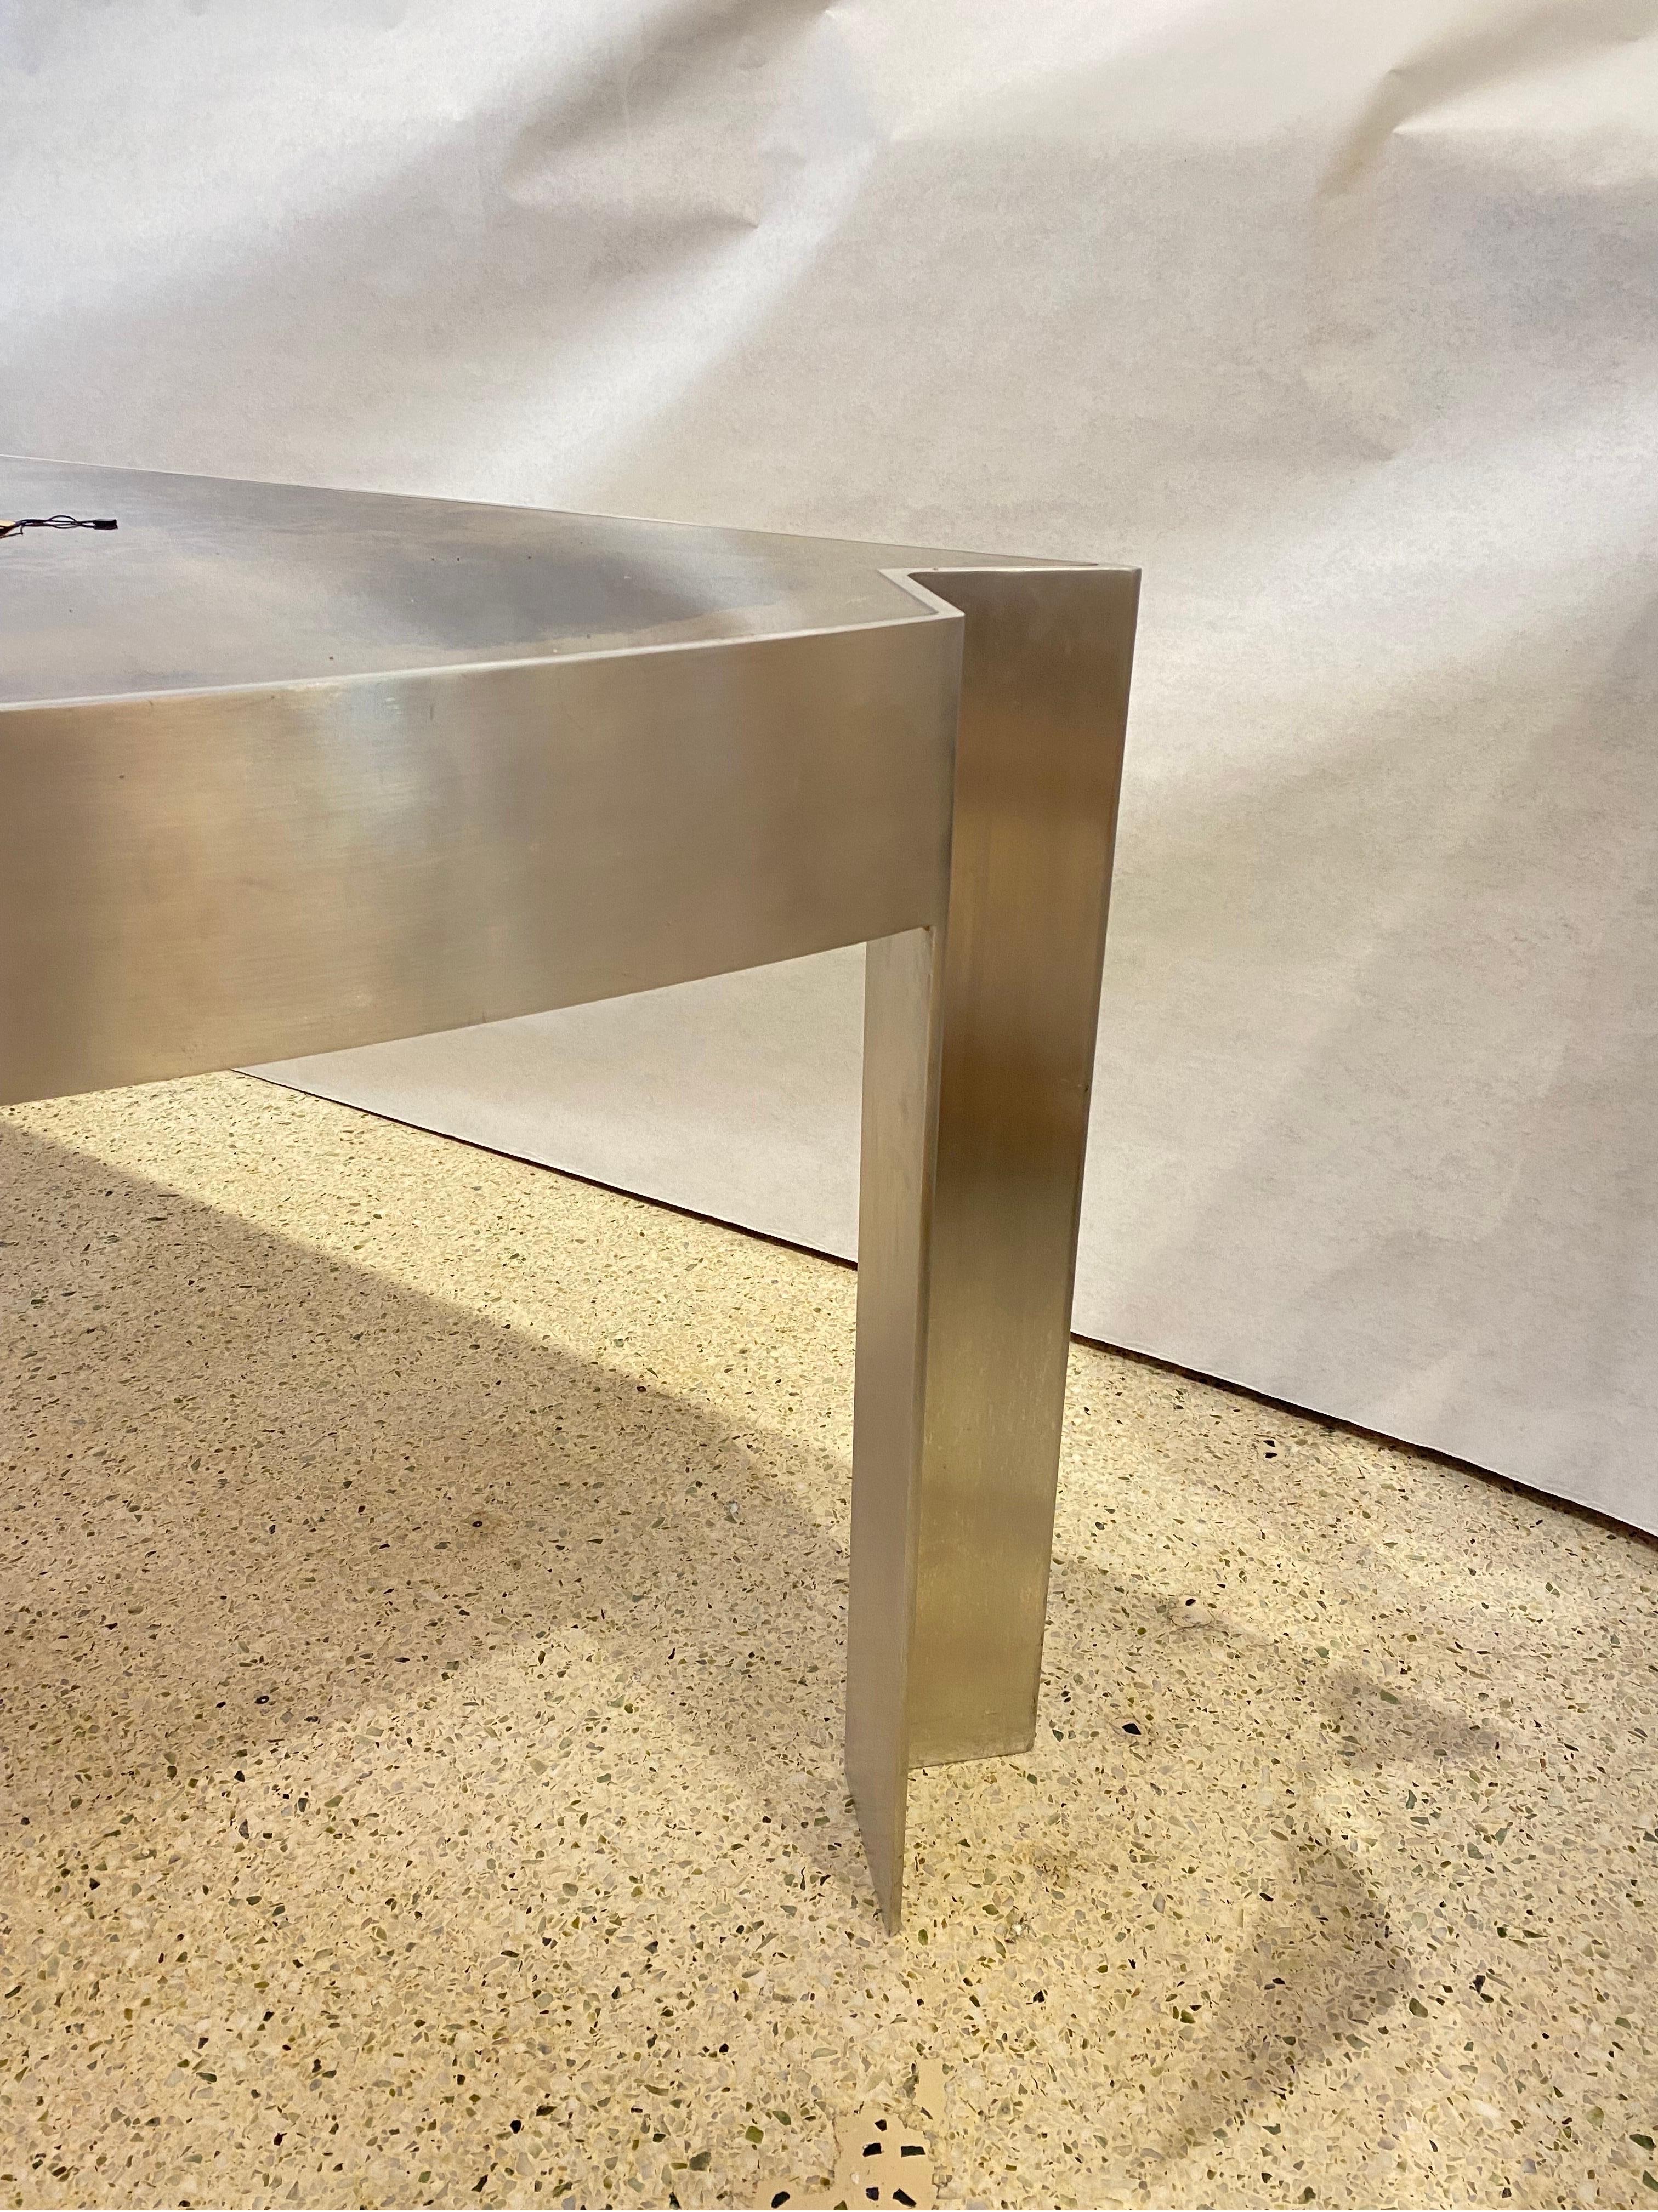 Aluminum Mezzaluna Desk by Leon Rosen for Pace Collection